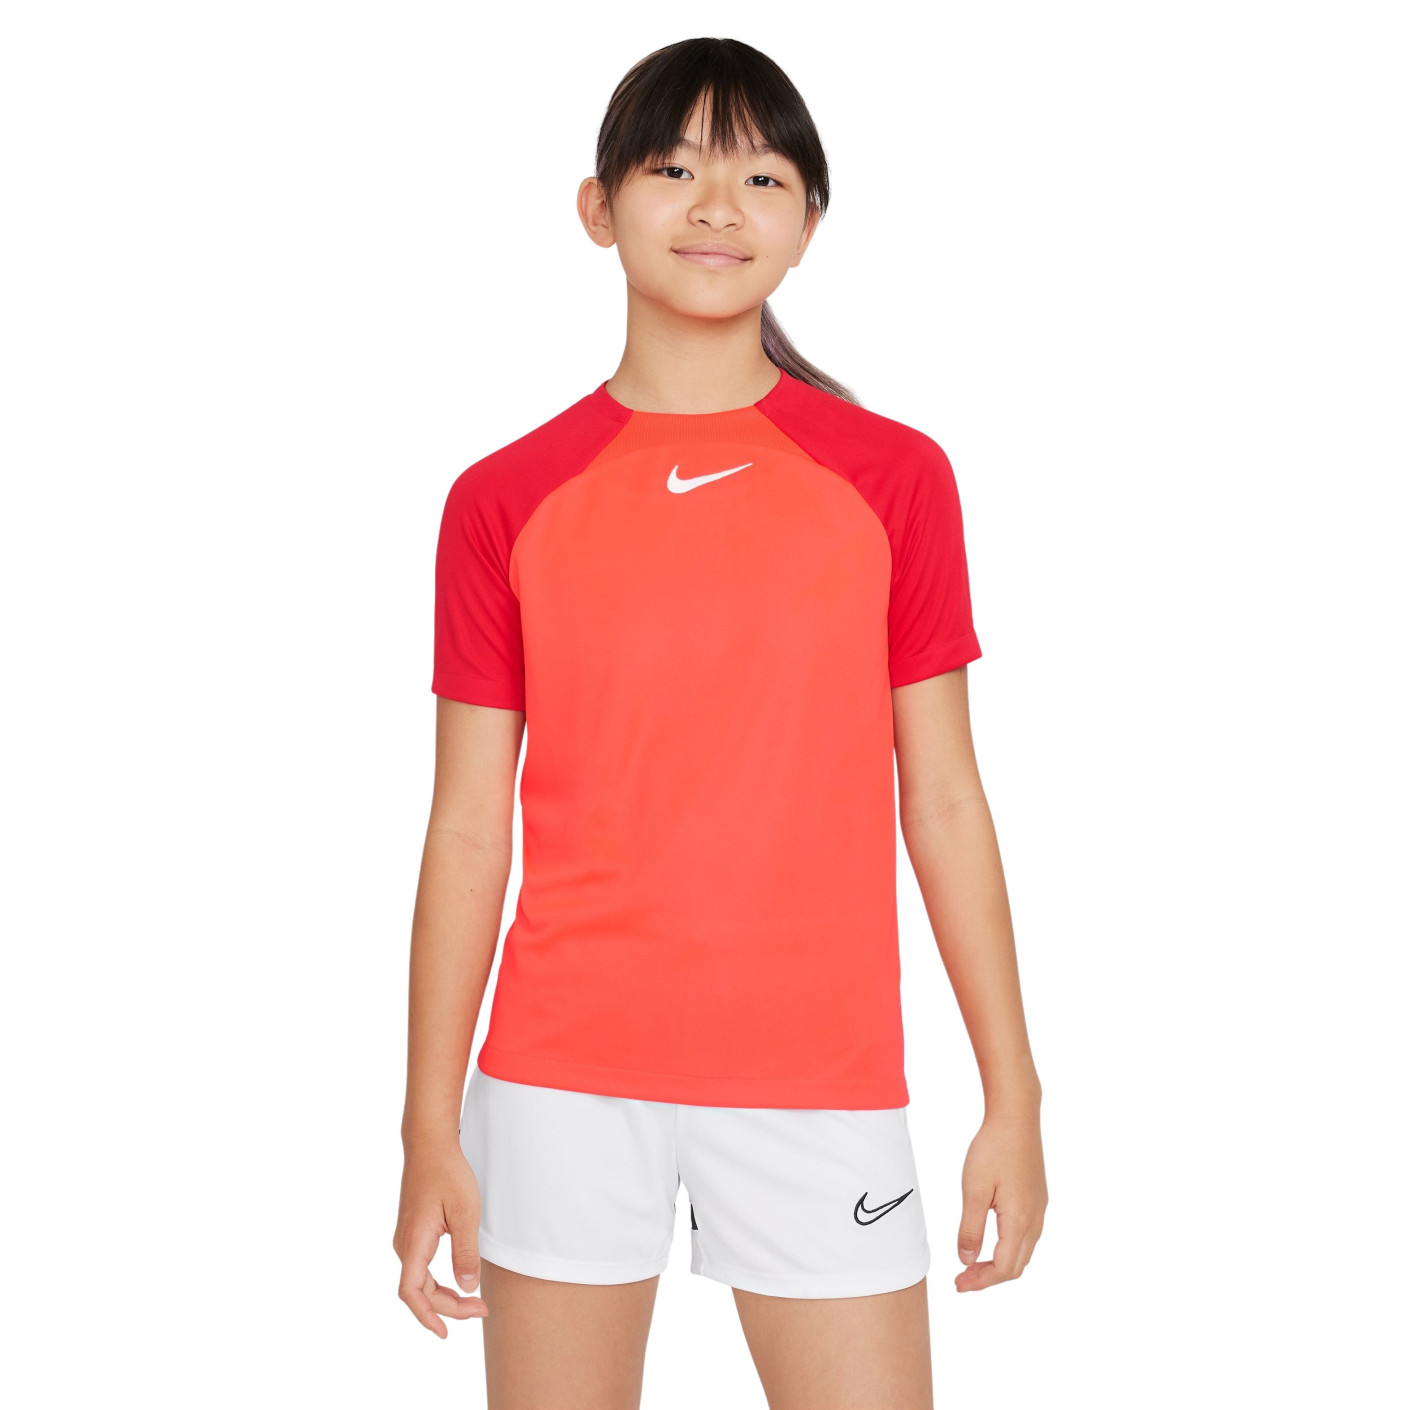 Chemise d'entraînement Nike Academy Pro pour enfants rouge foncé